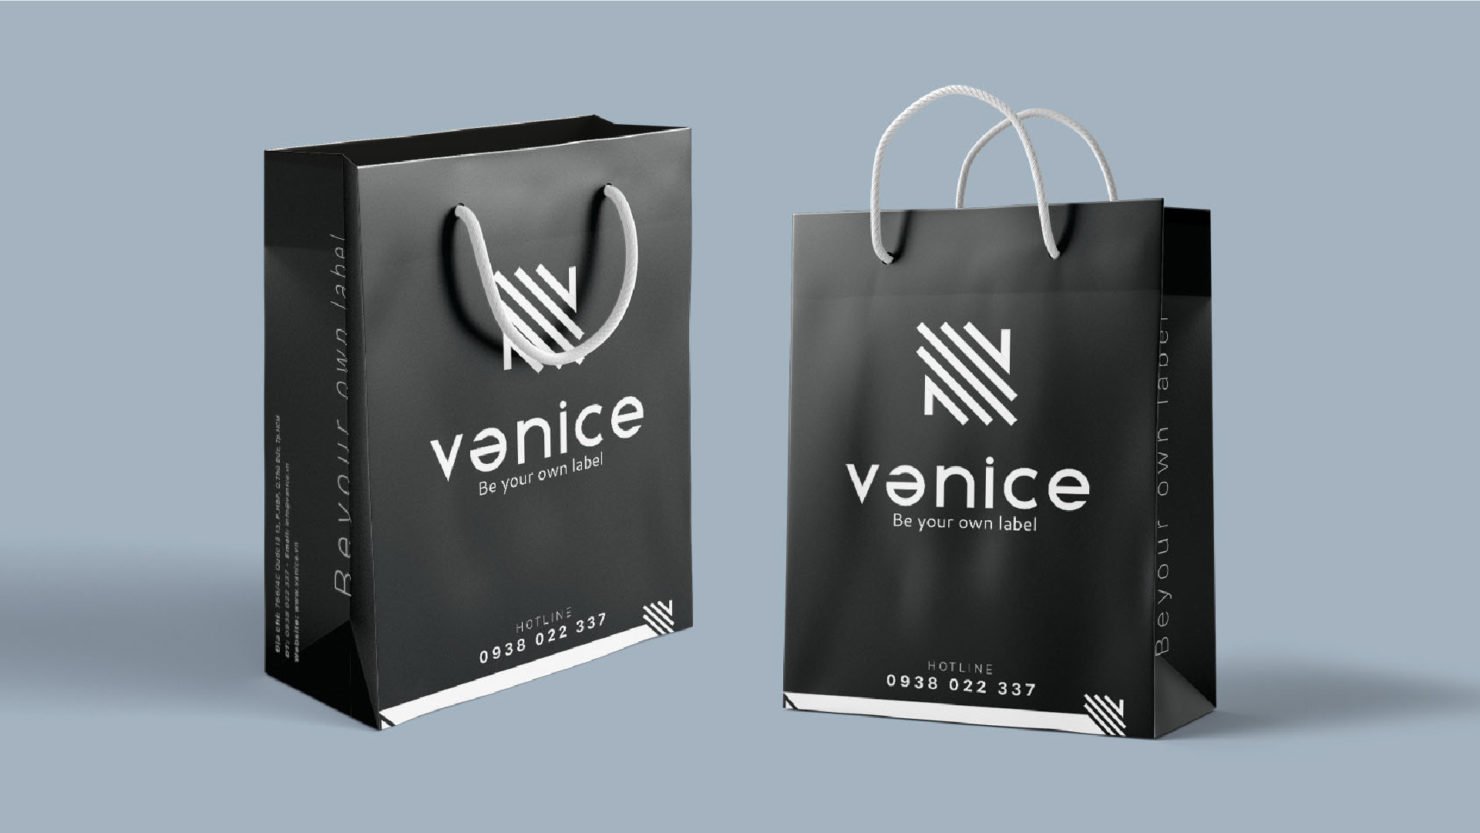 thiết kế hộp giấy, thiết kế túi giấy, thiết kế hộp áo sơ mi, packaging design, thương hiệu vanice, thời trang vanice, logo vanice